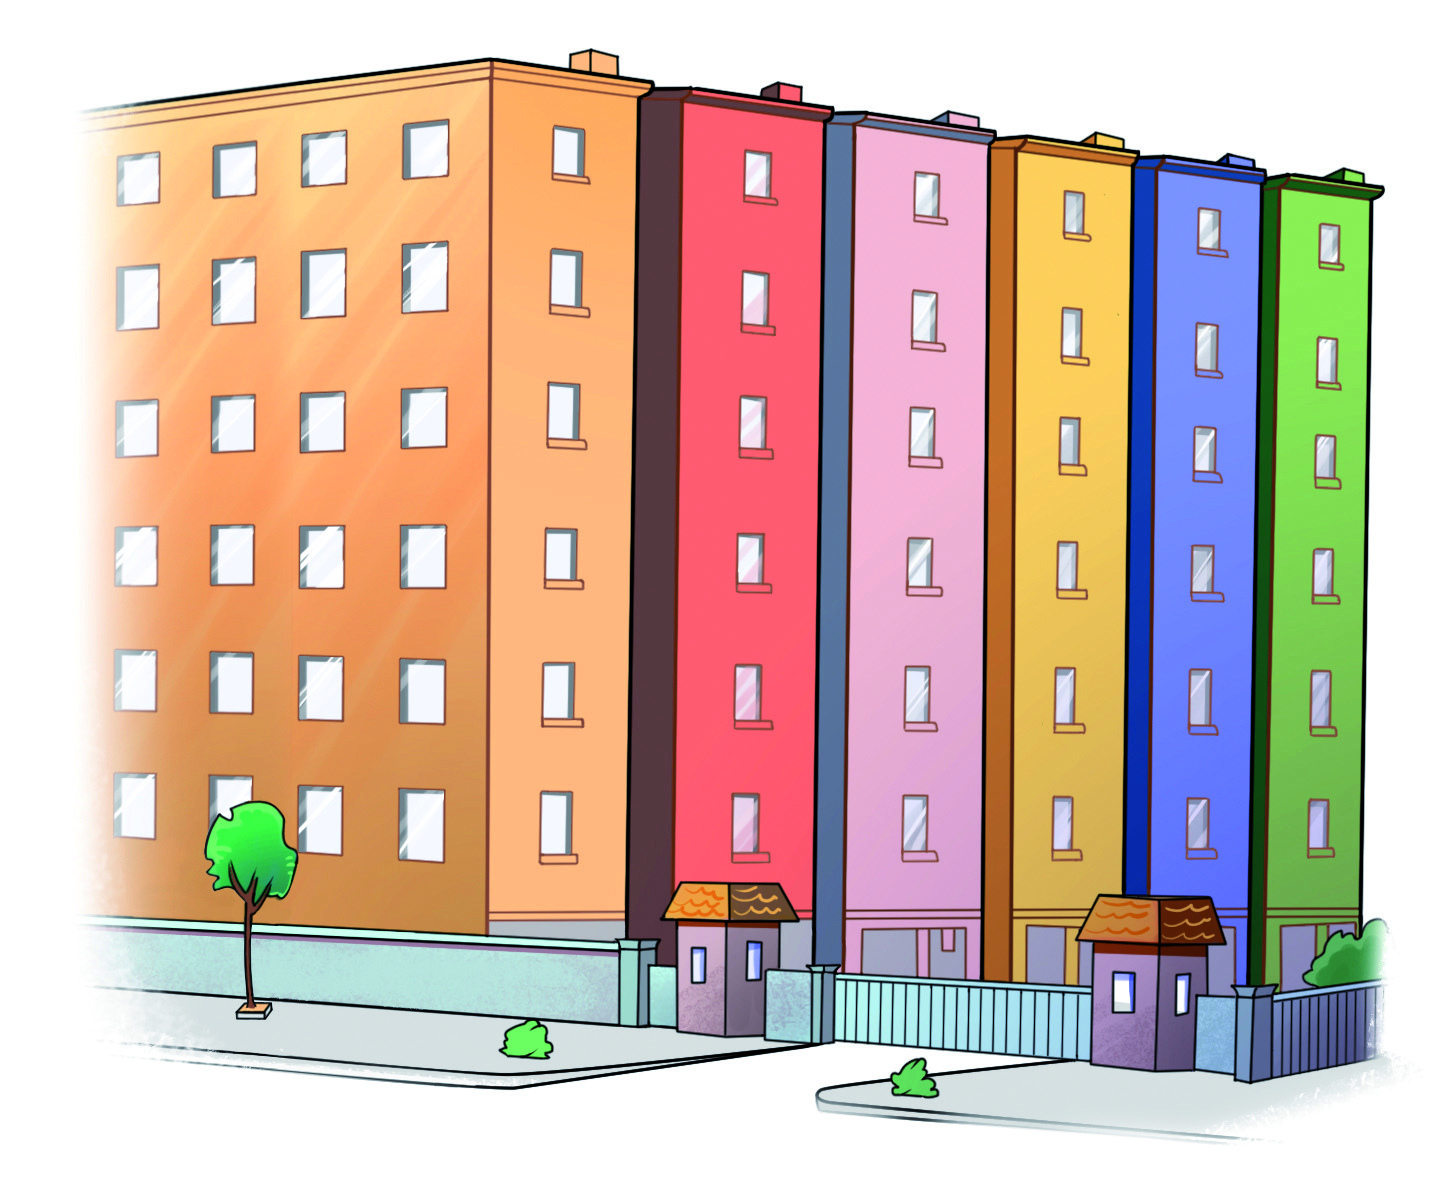 Ilustração. Condomínio com seis prédios lado a lado com seis andares cada um.